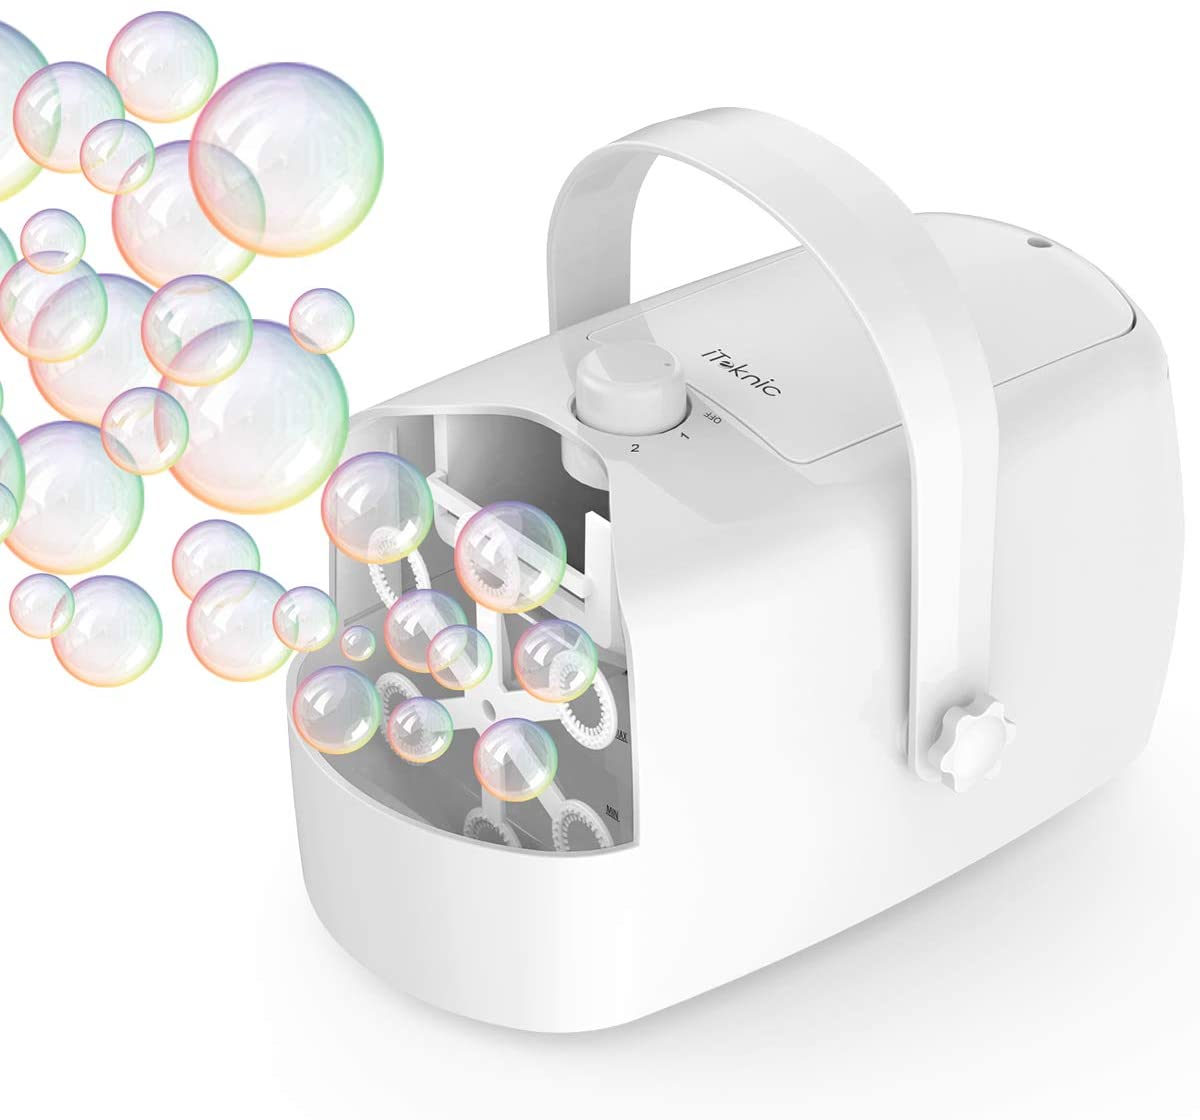 Iteknic Bubble Machine Automatic Bubble Blower Portable Auto Bubble